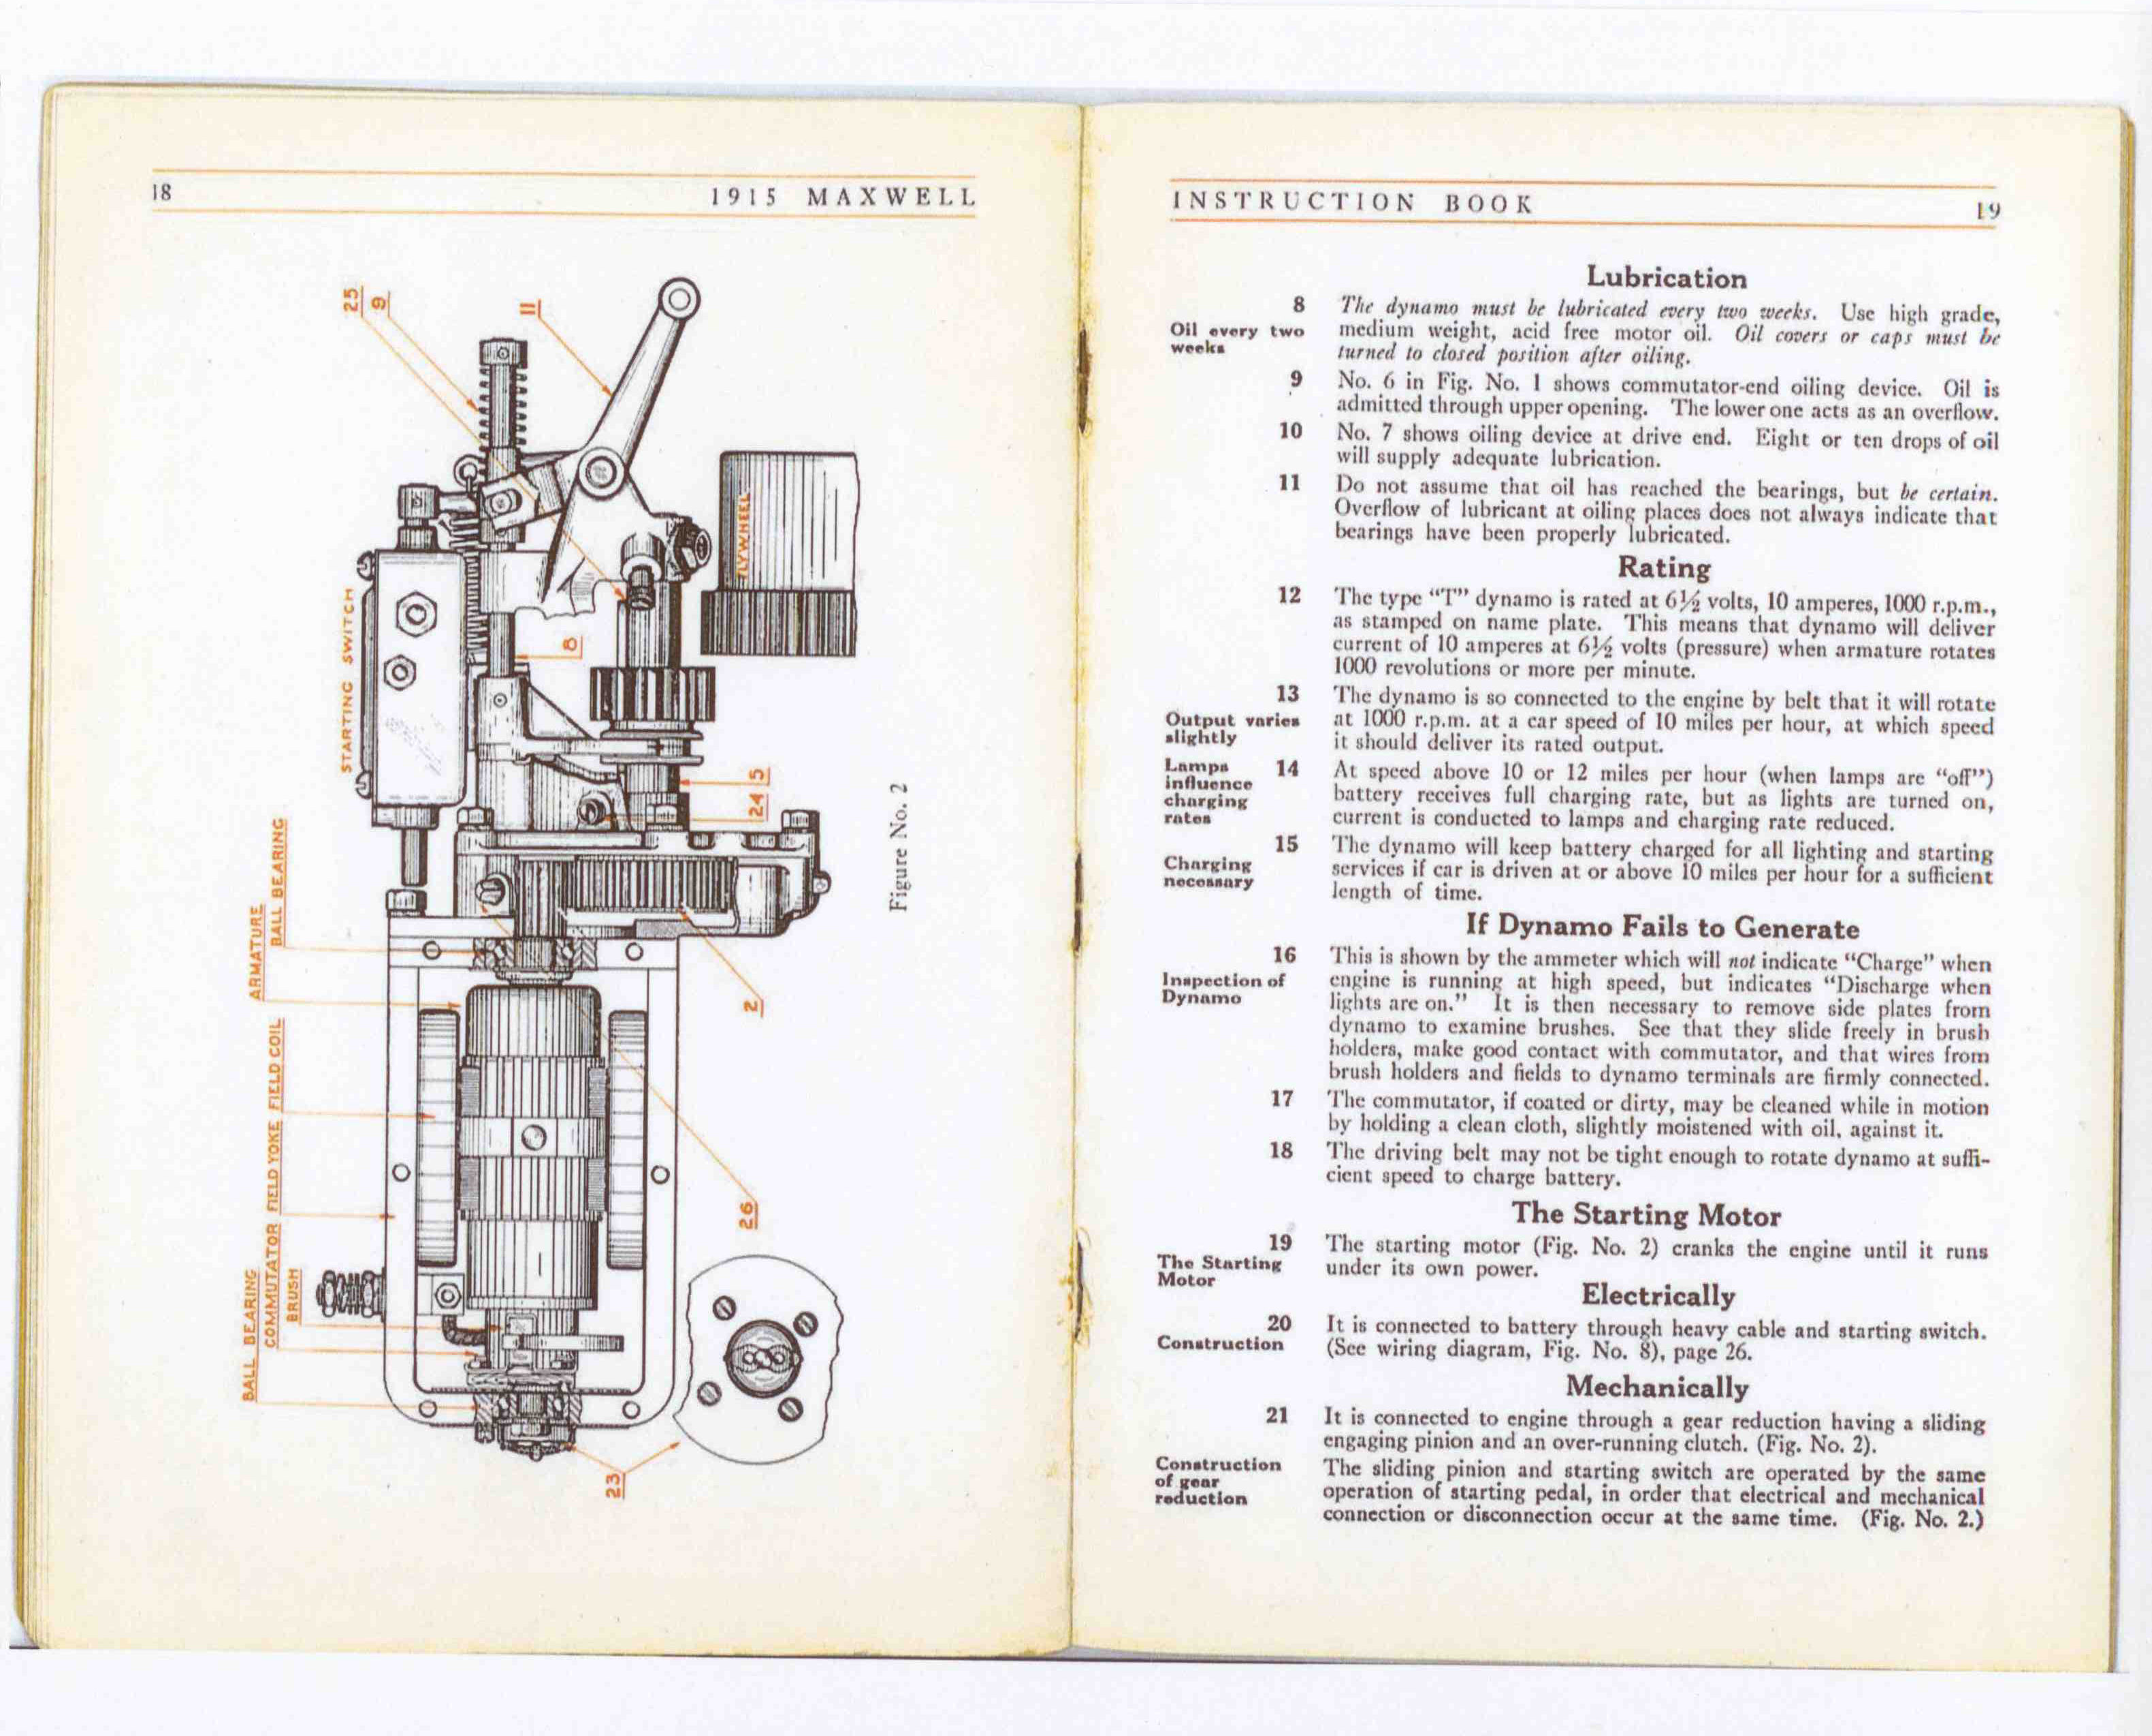 1915 Maxwell InstructionBook-11